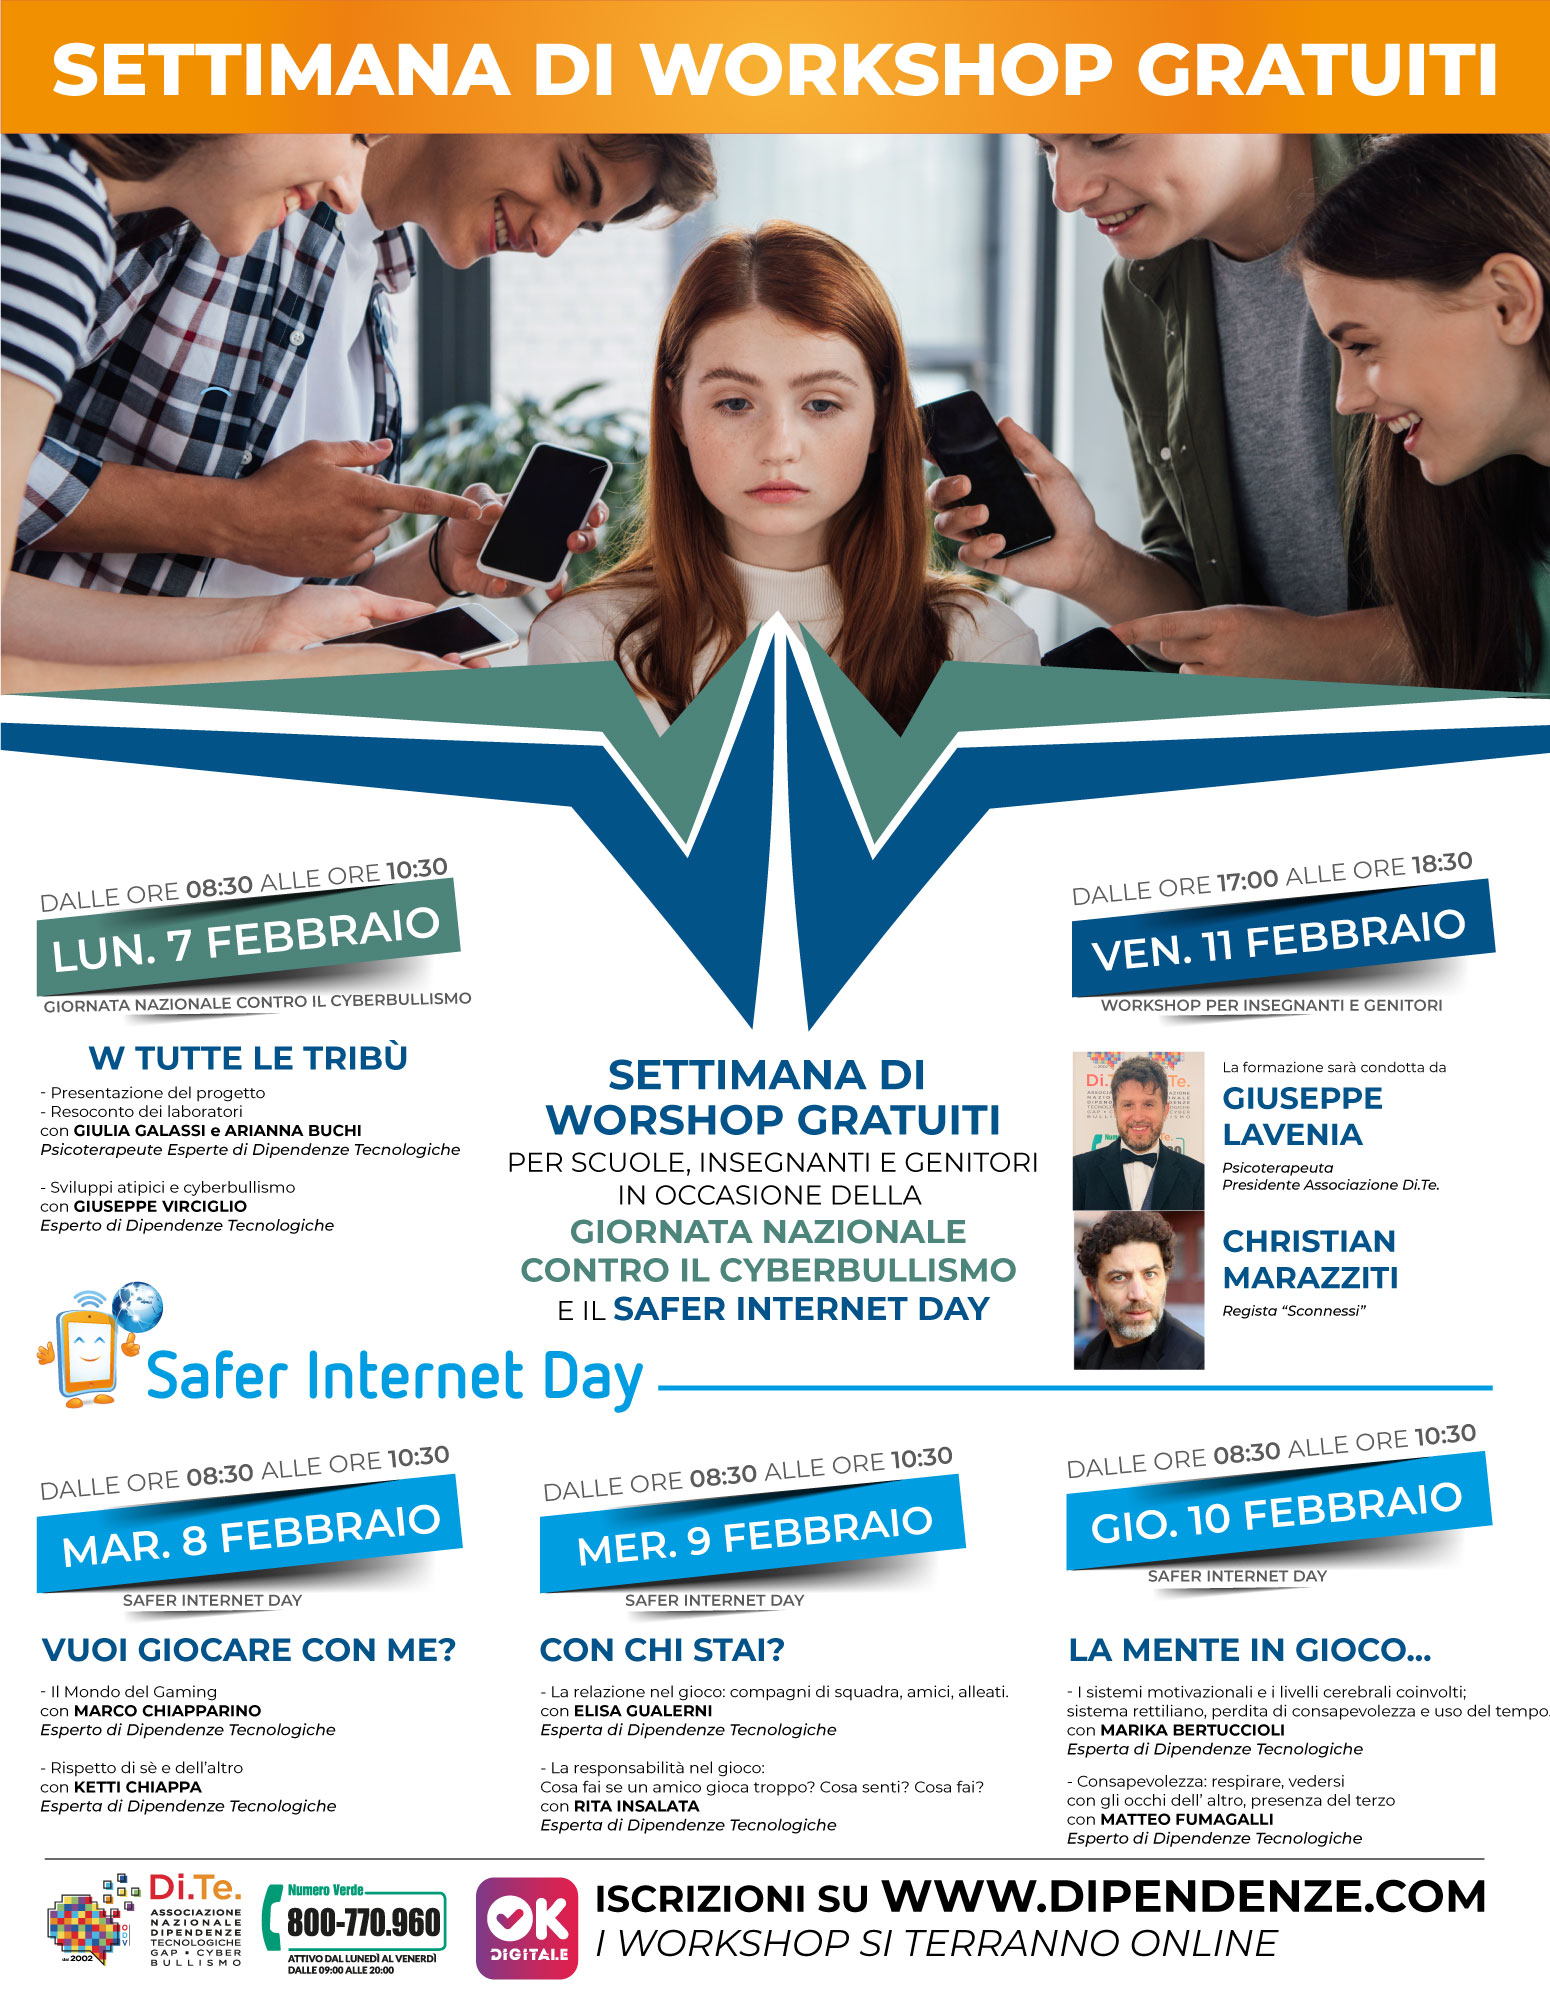 safer-internet-day-2022-4